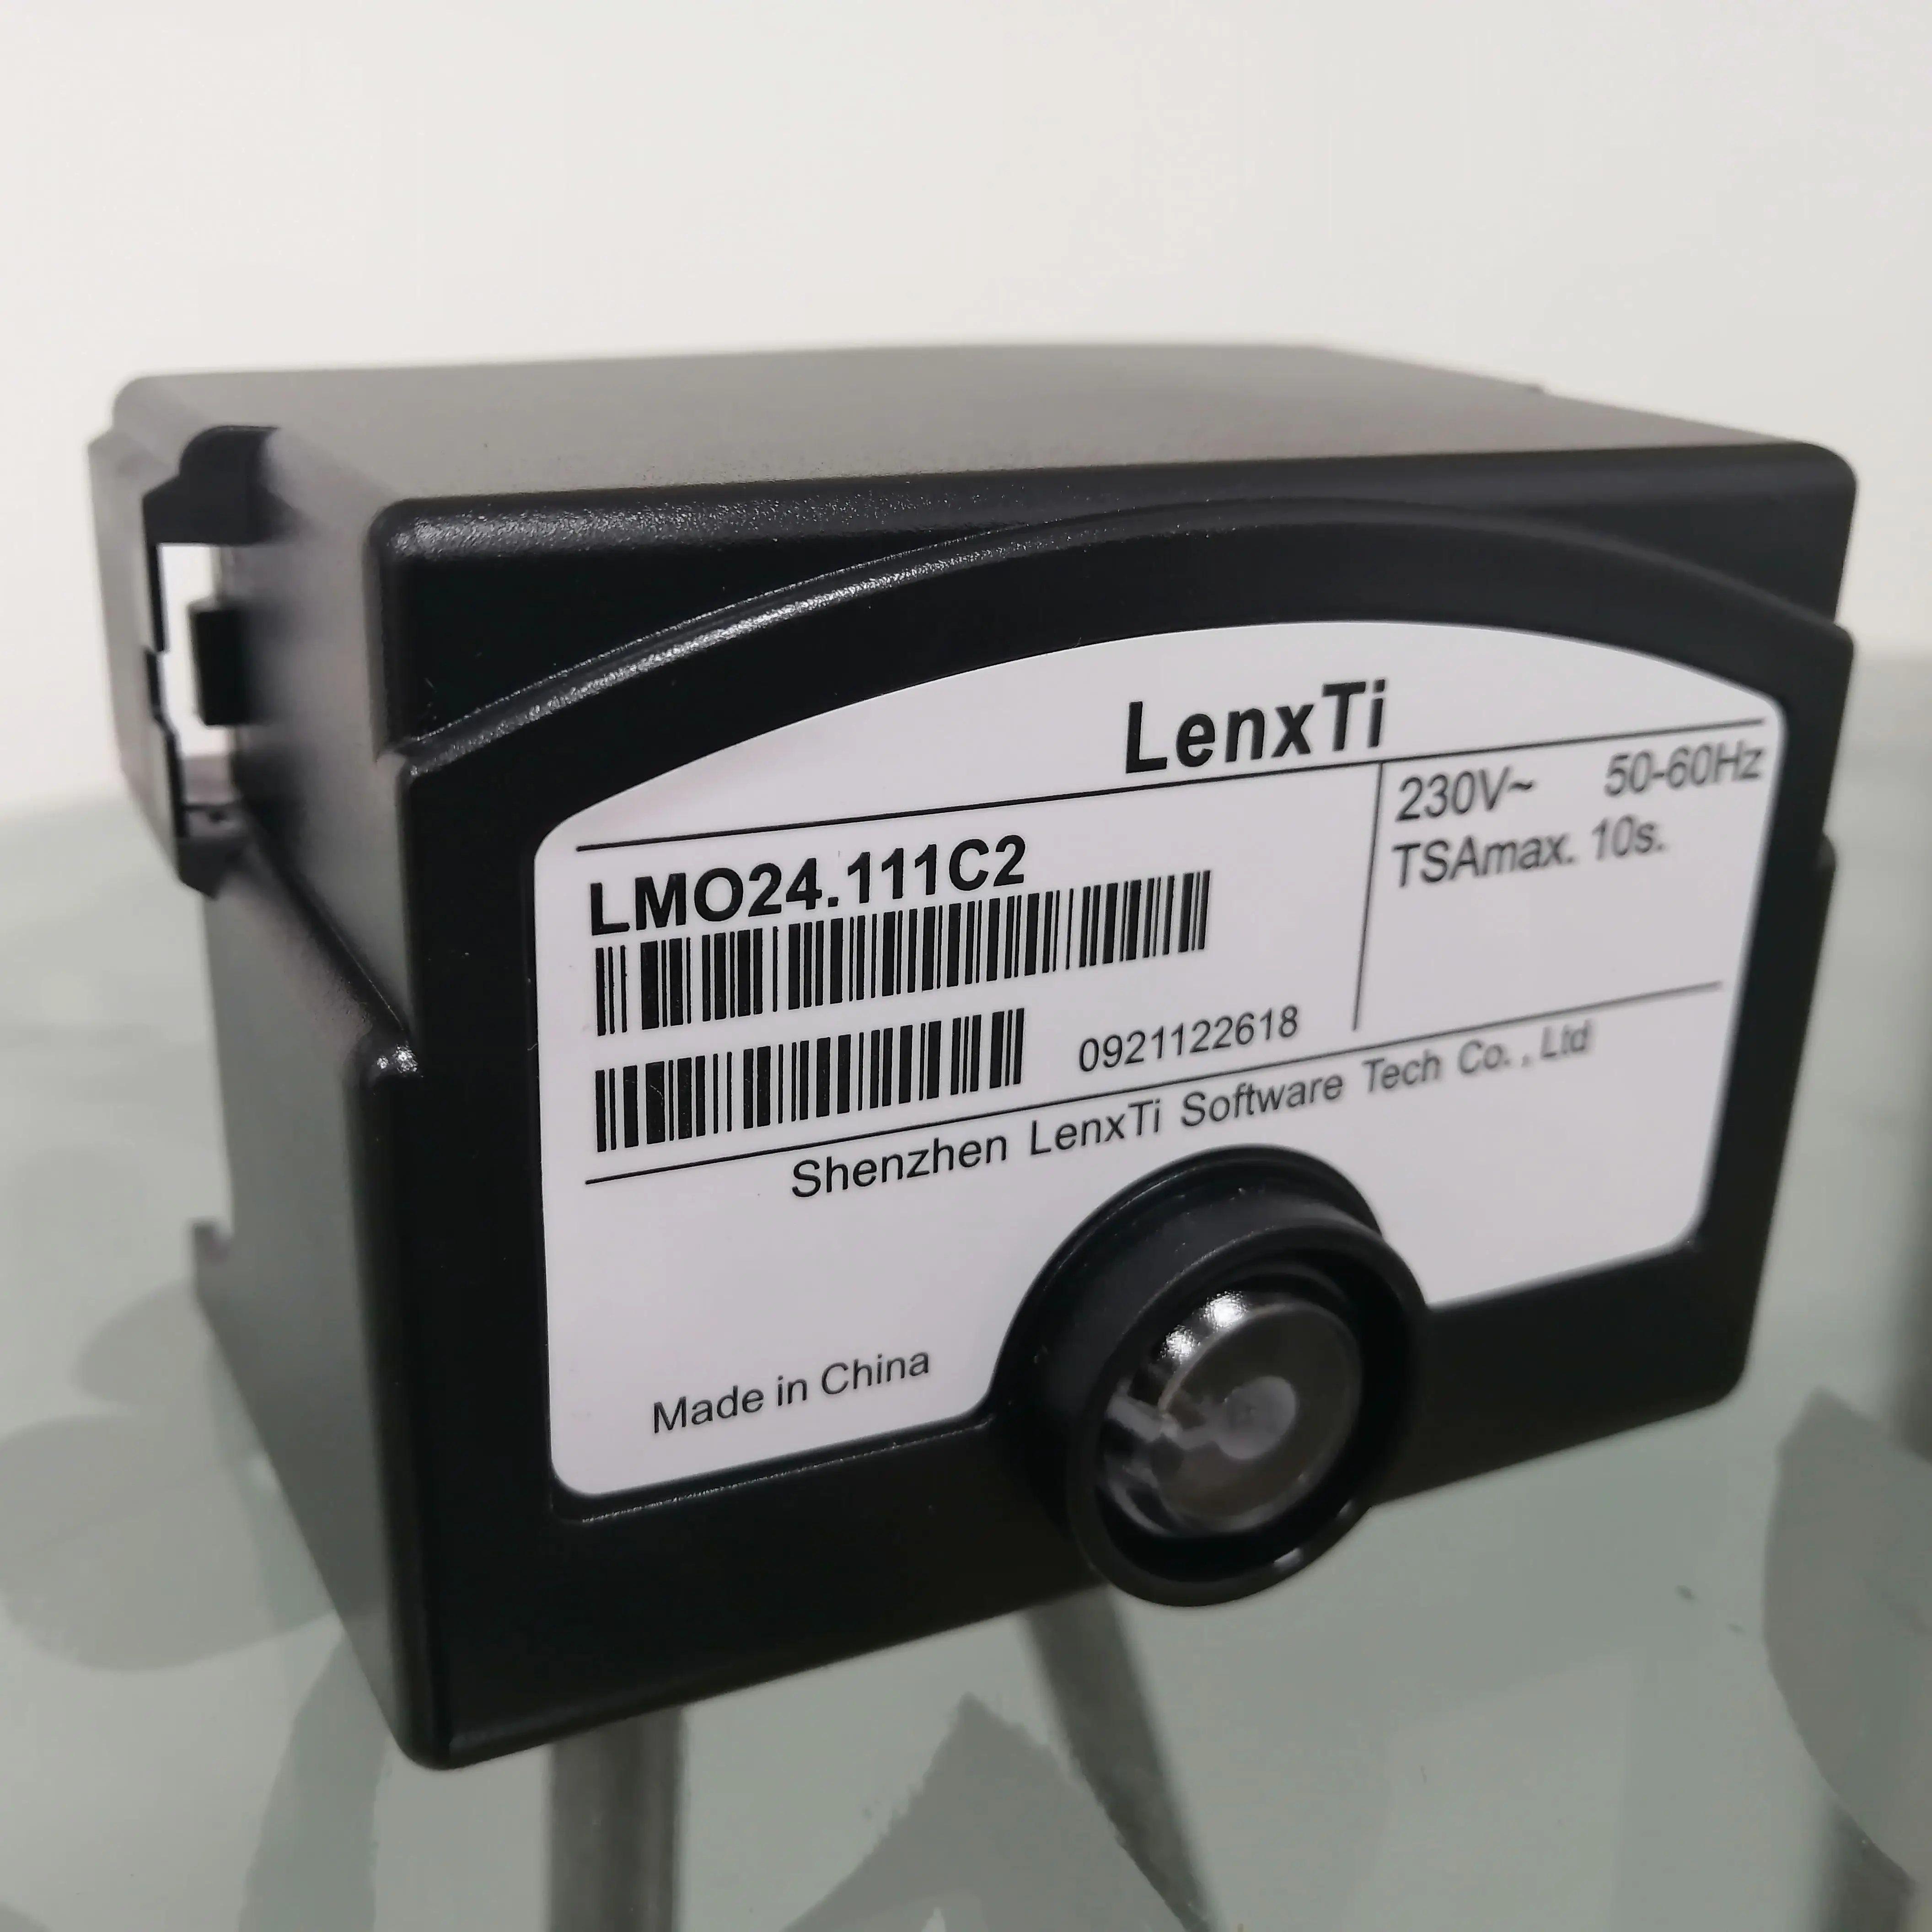 

LenxTi program controller LMO14.111C2|LMO14.113C2|LMO24.111C2|LMO24.011C2|LMO24.255C2|LMO44.255C2|burner spare parts|accessory